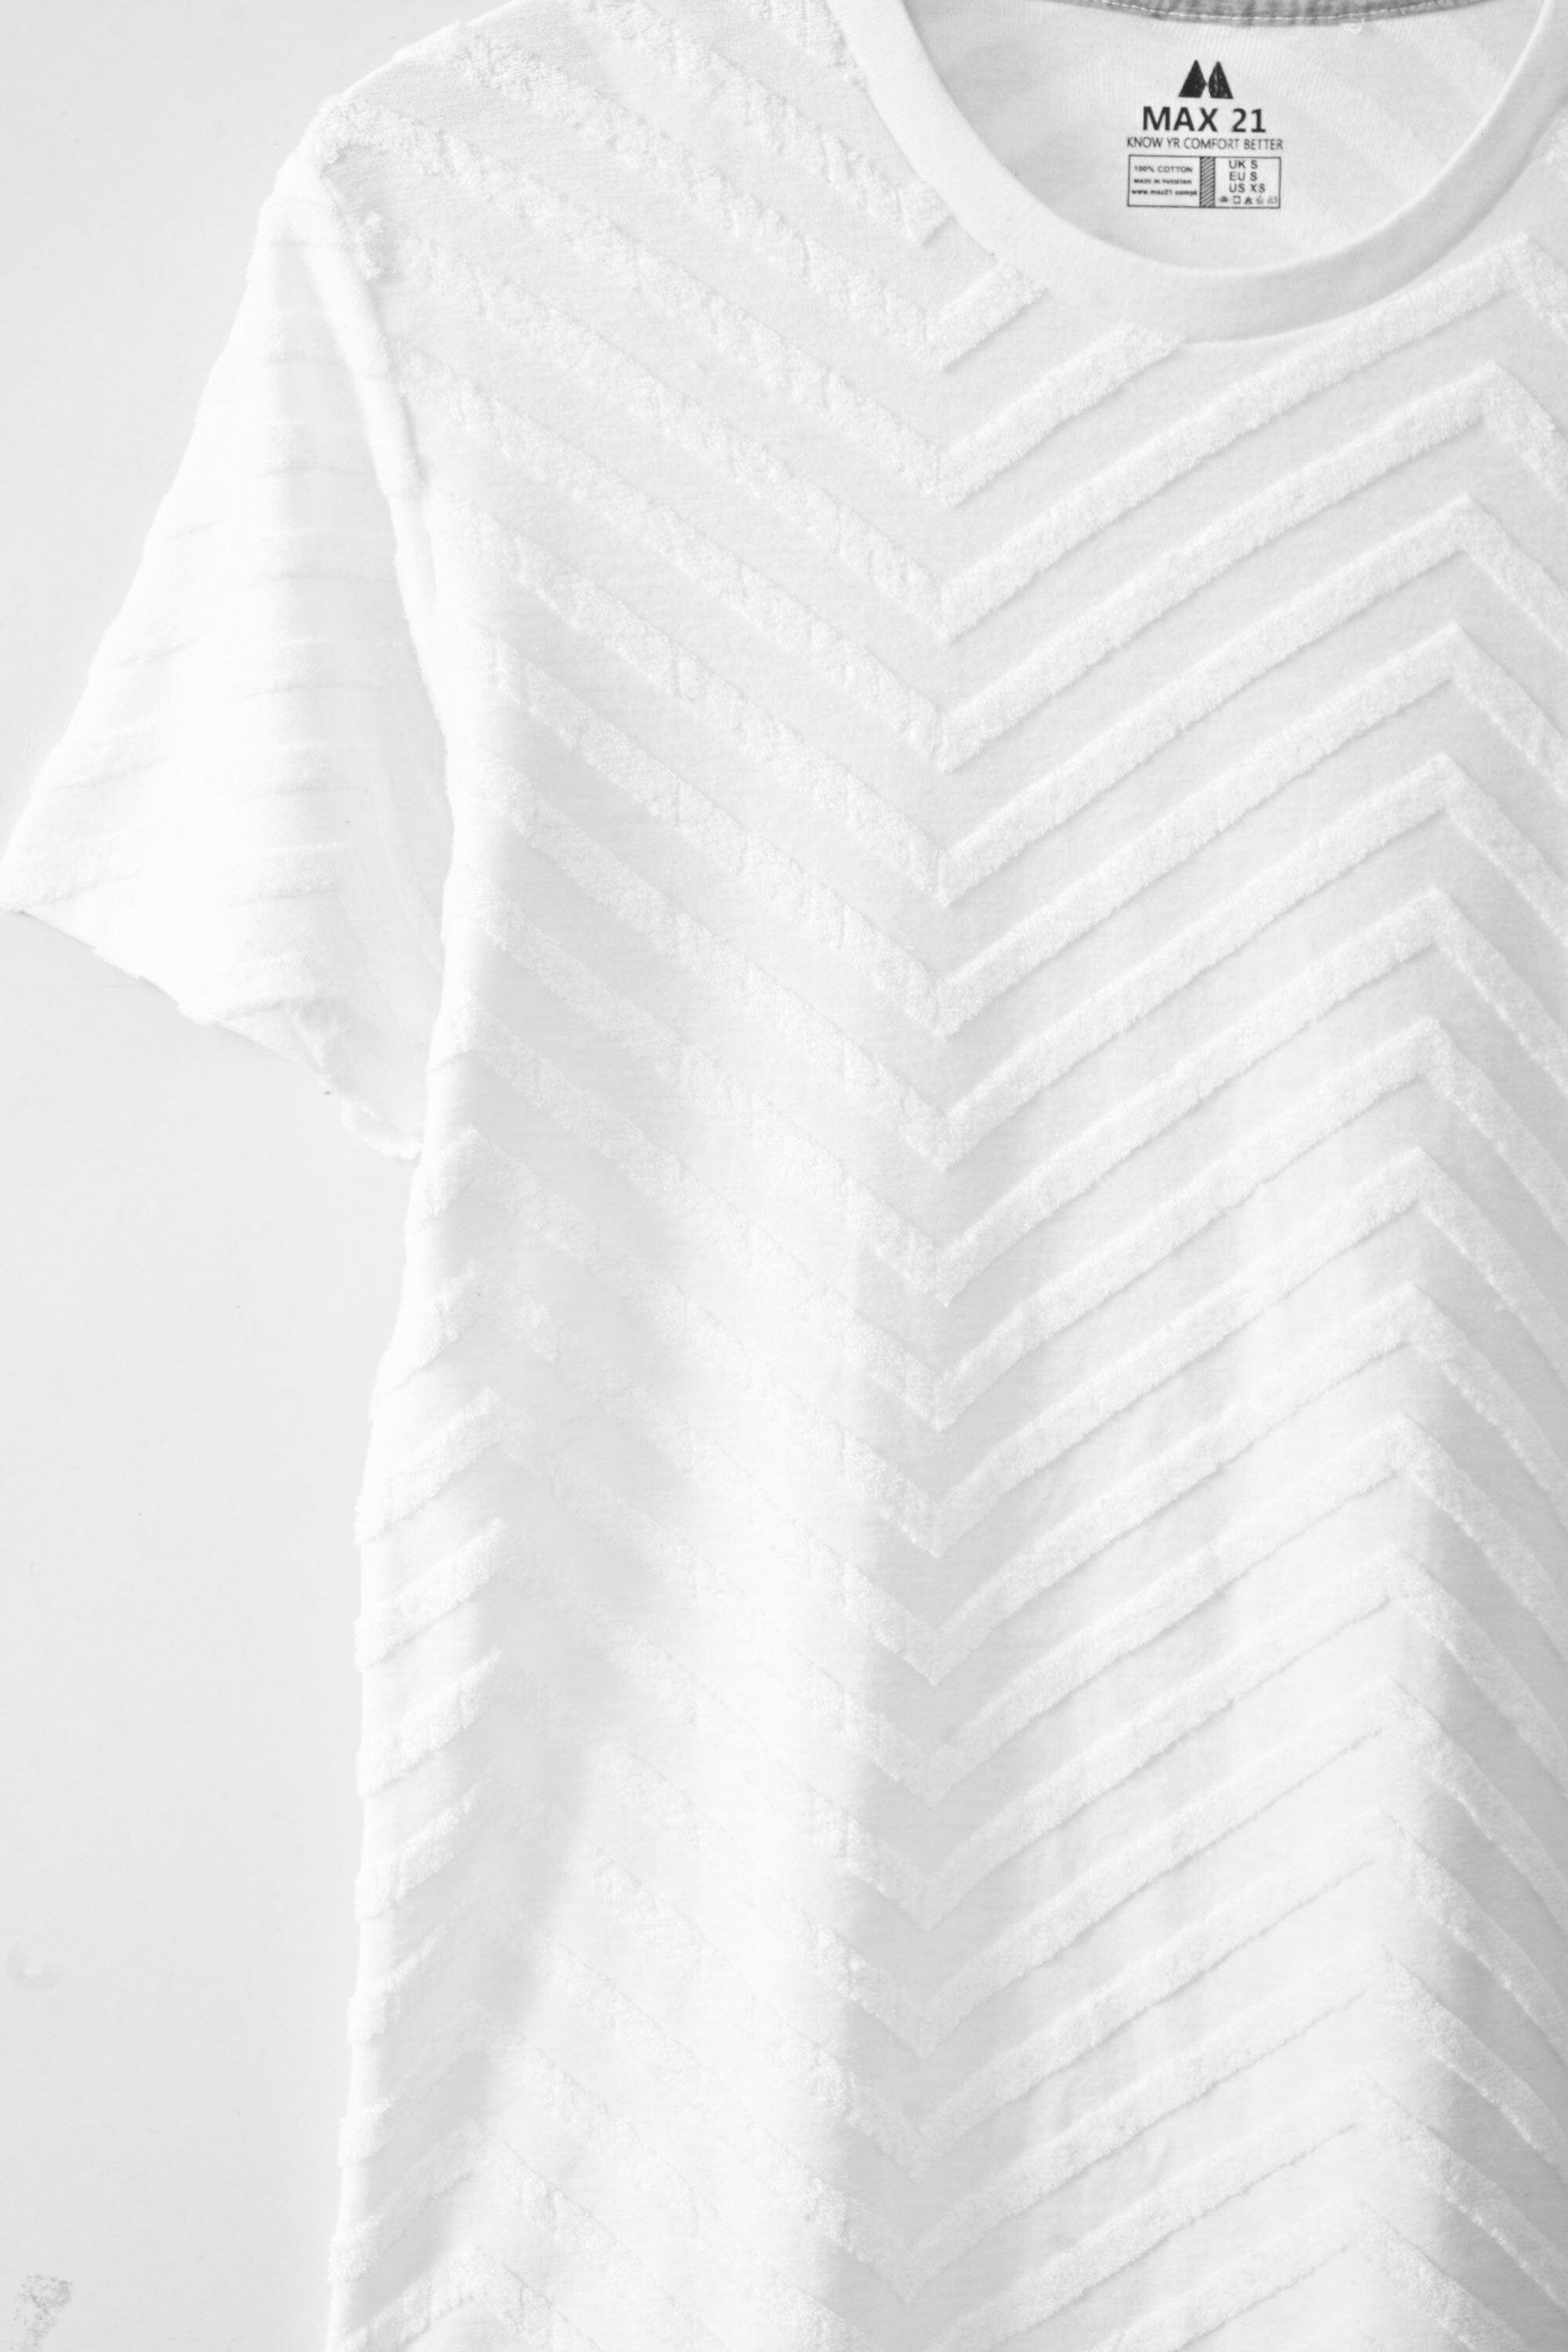 Max 21 Women's Wels Design Short Sleeve Tee Shirt Women's Tee Shirt SZK 